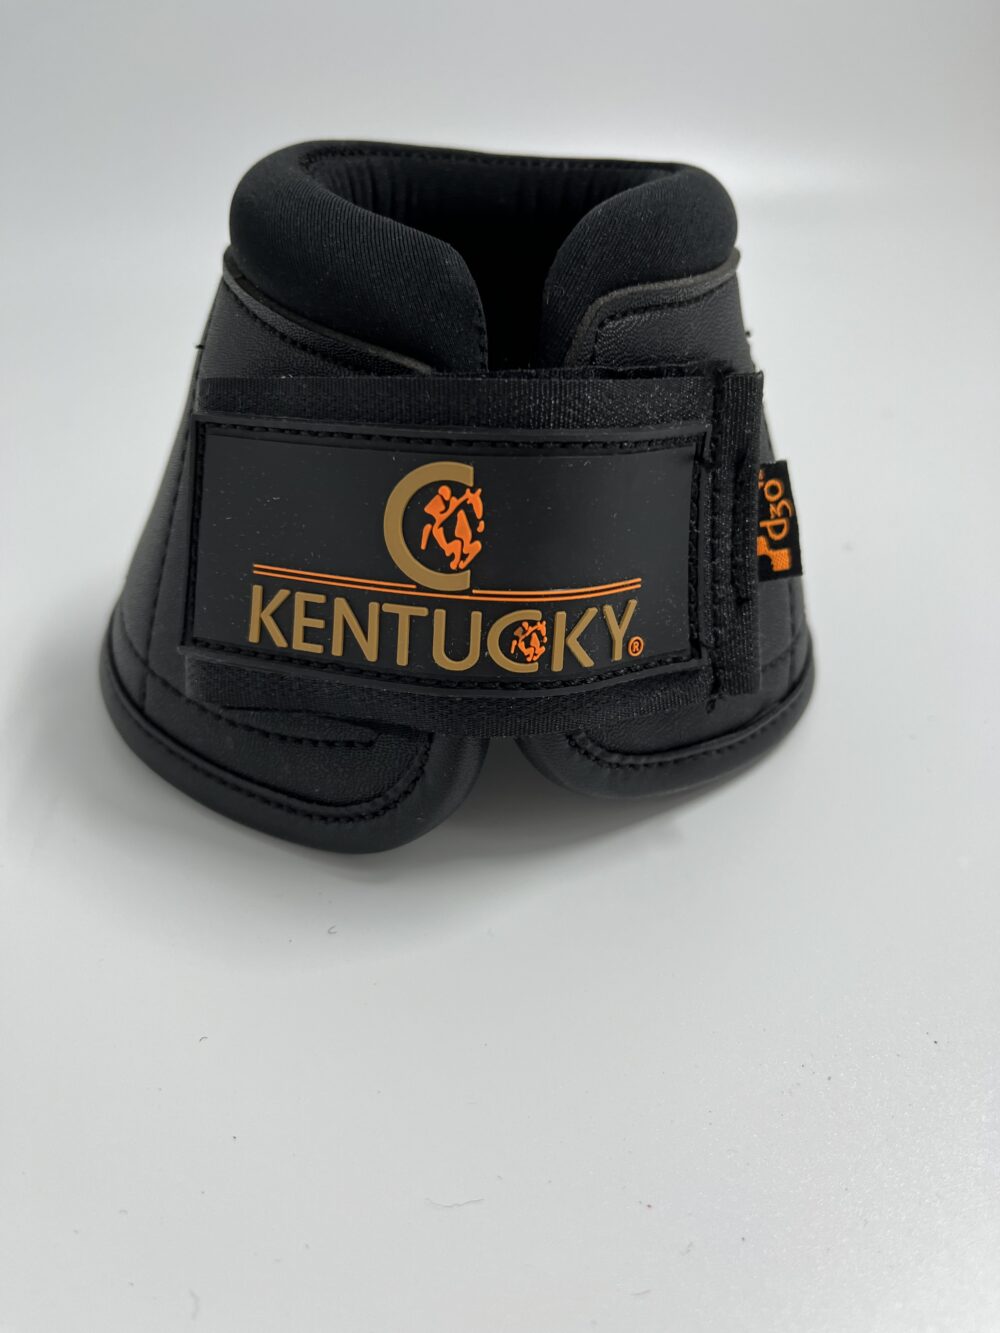 Kentucky Overreach Boots D30